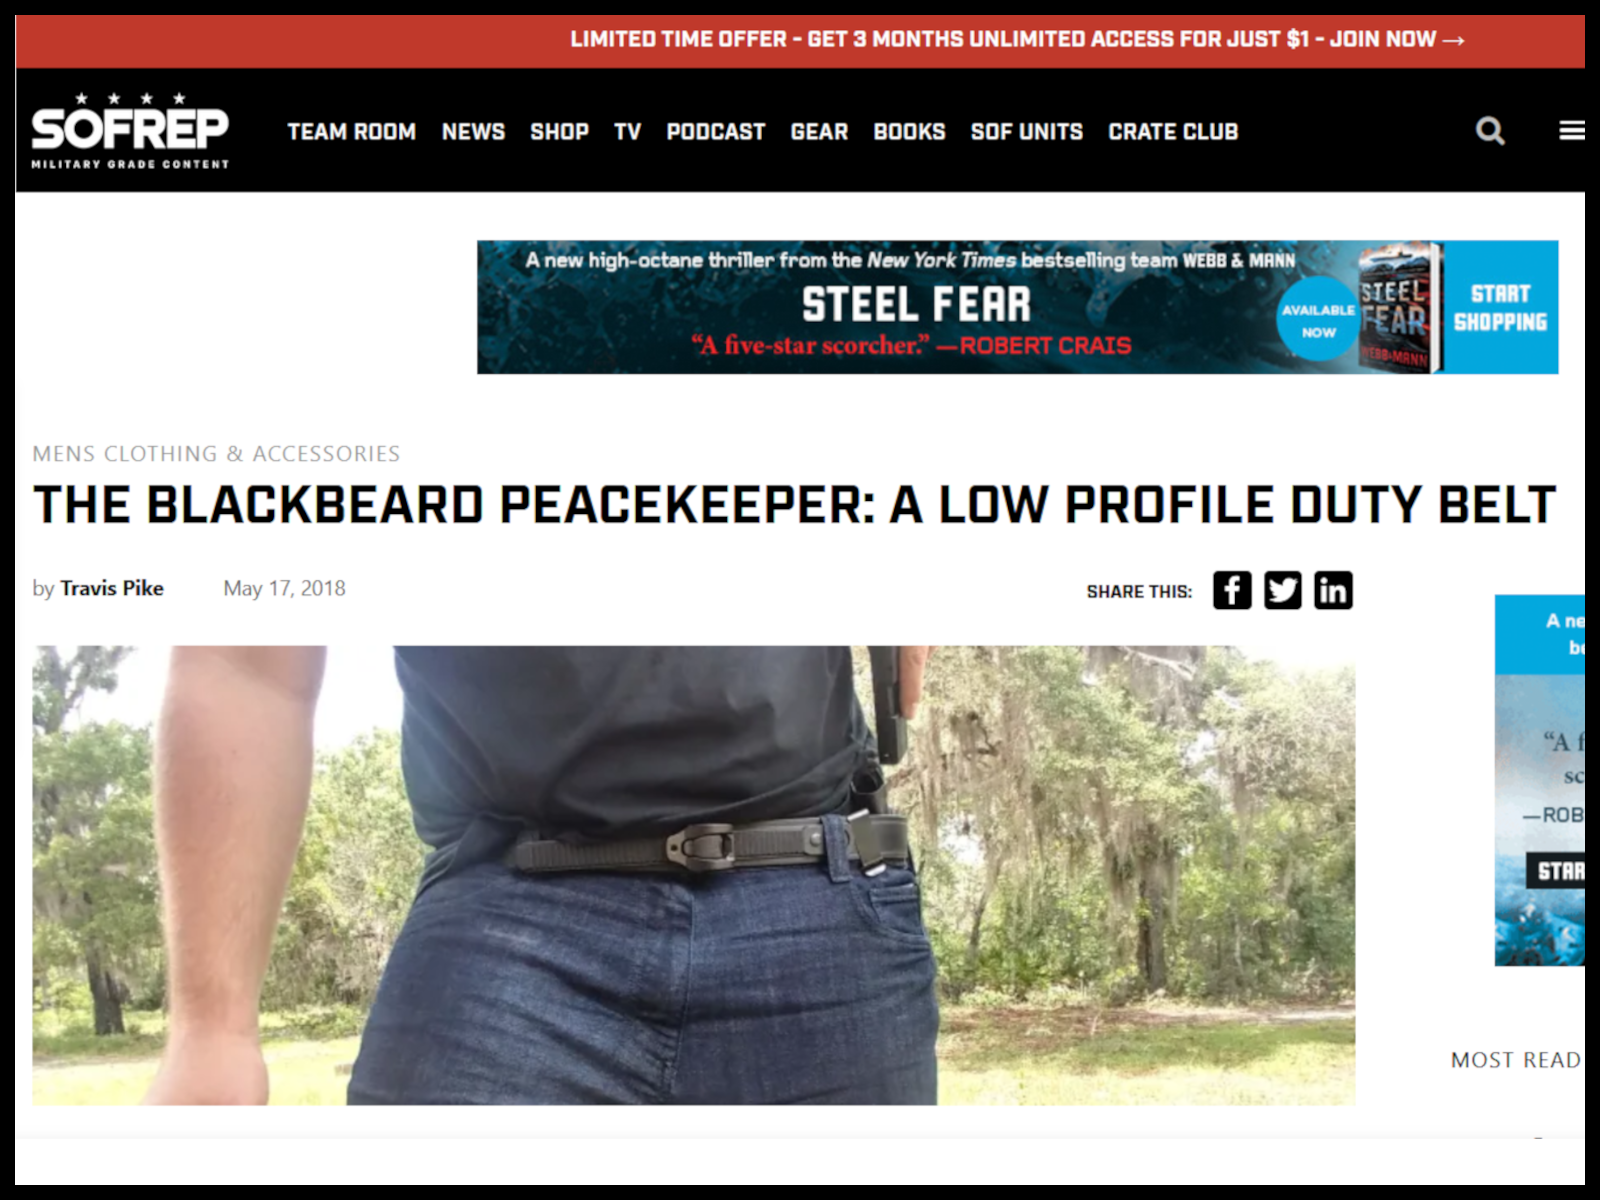 The Blackbeard Peacekeeper: A Low Profile Duty Belt